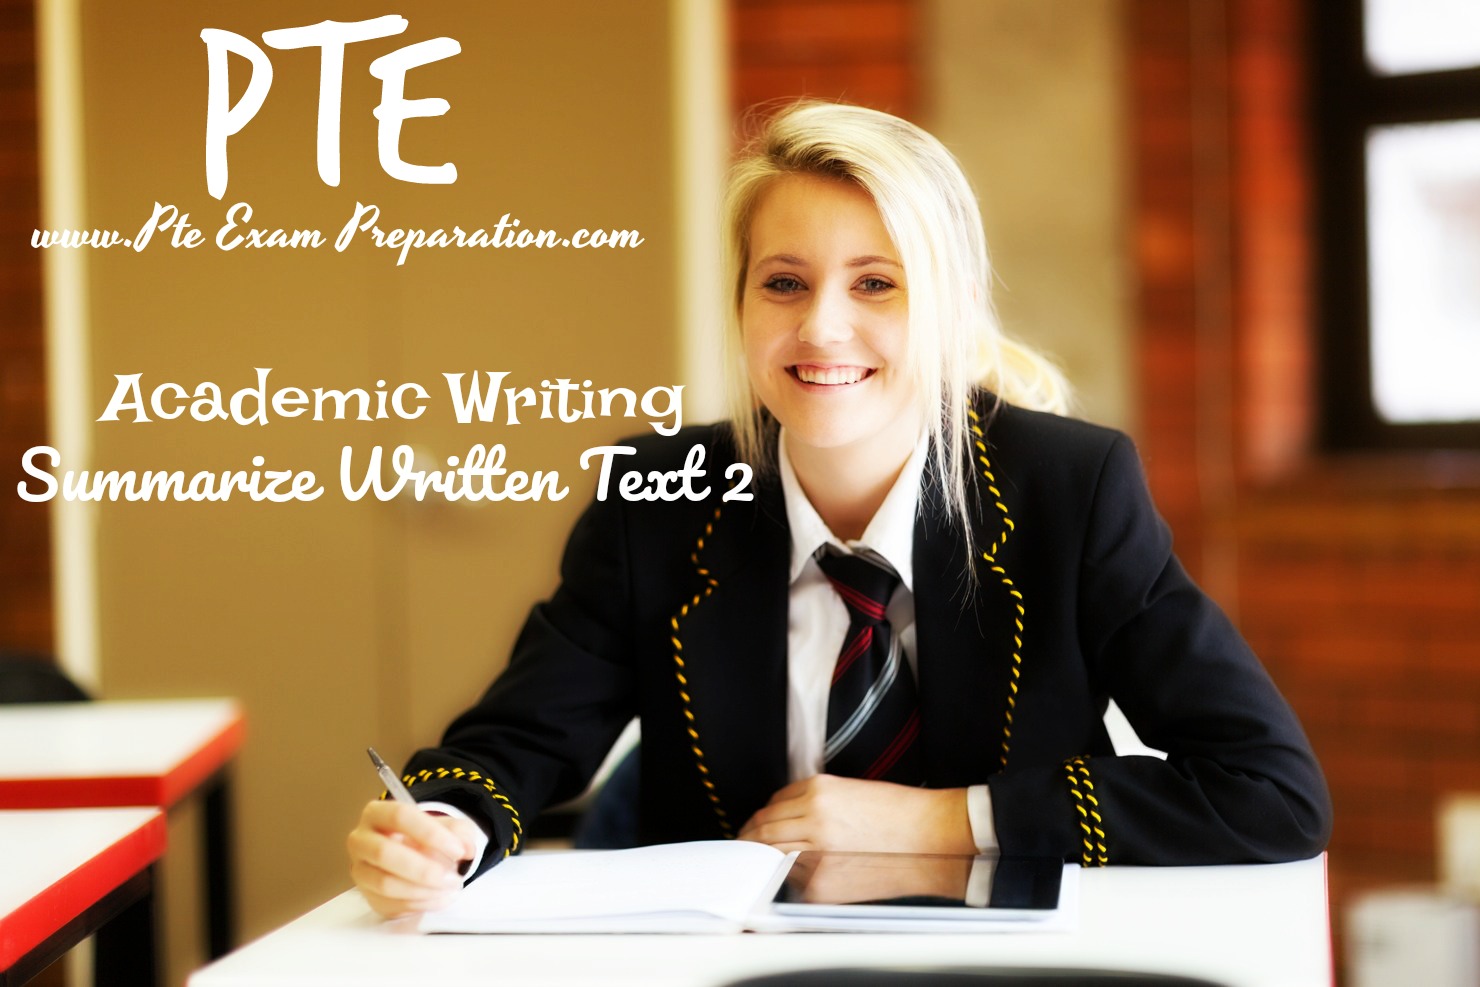 PTE Academic Writing Summarize Written Text